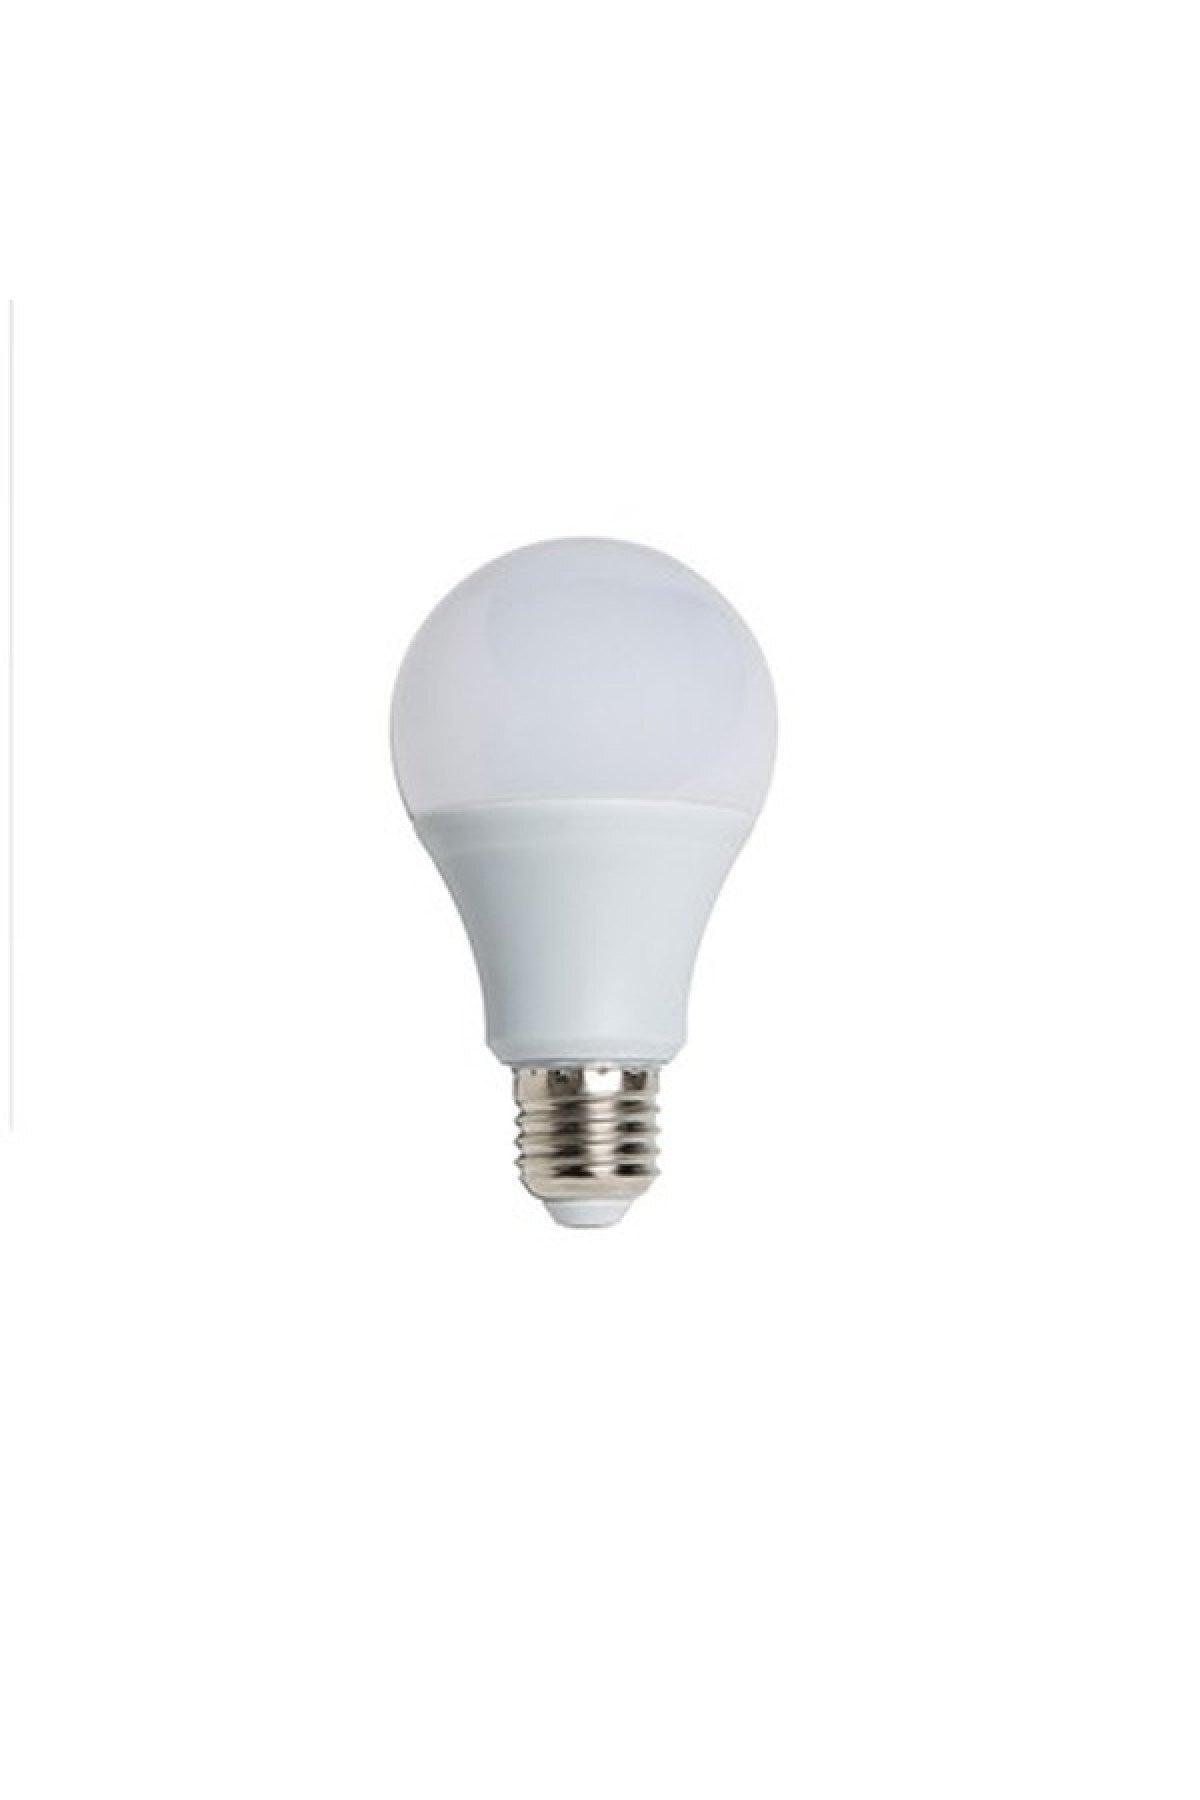 8.6 W - 60 W 10 Led Bulb Lampholder Light